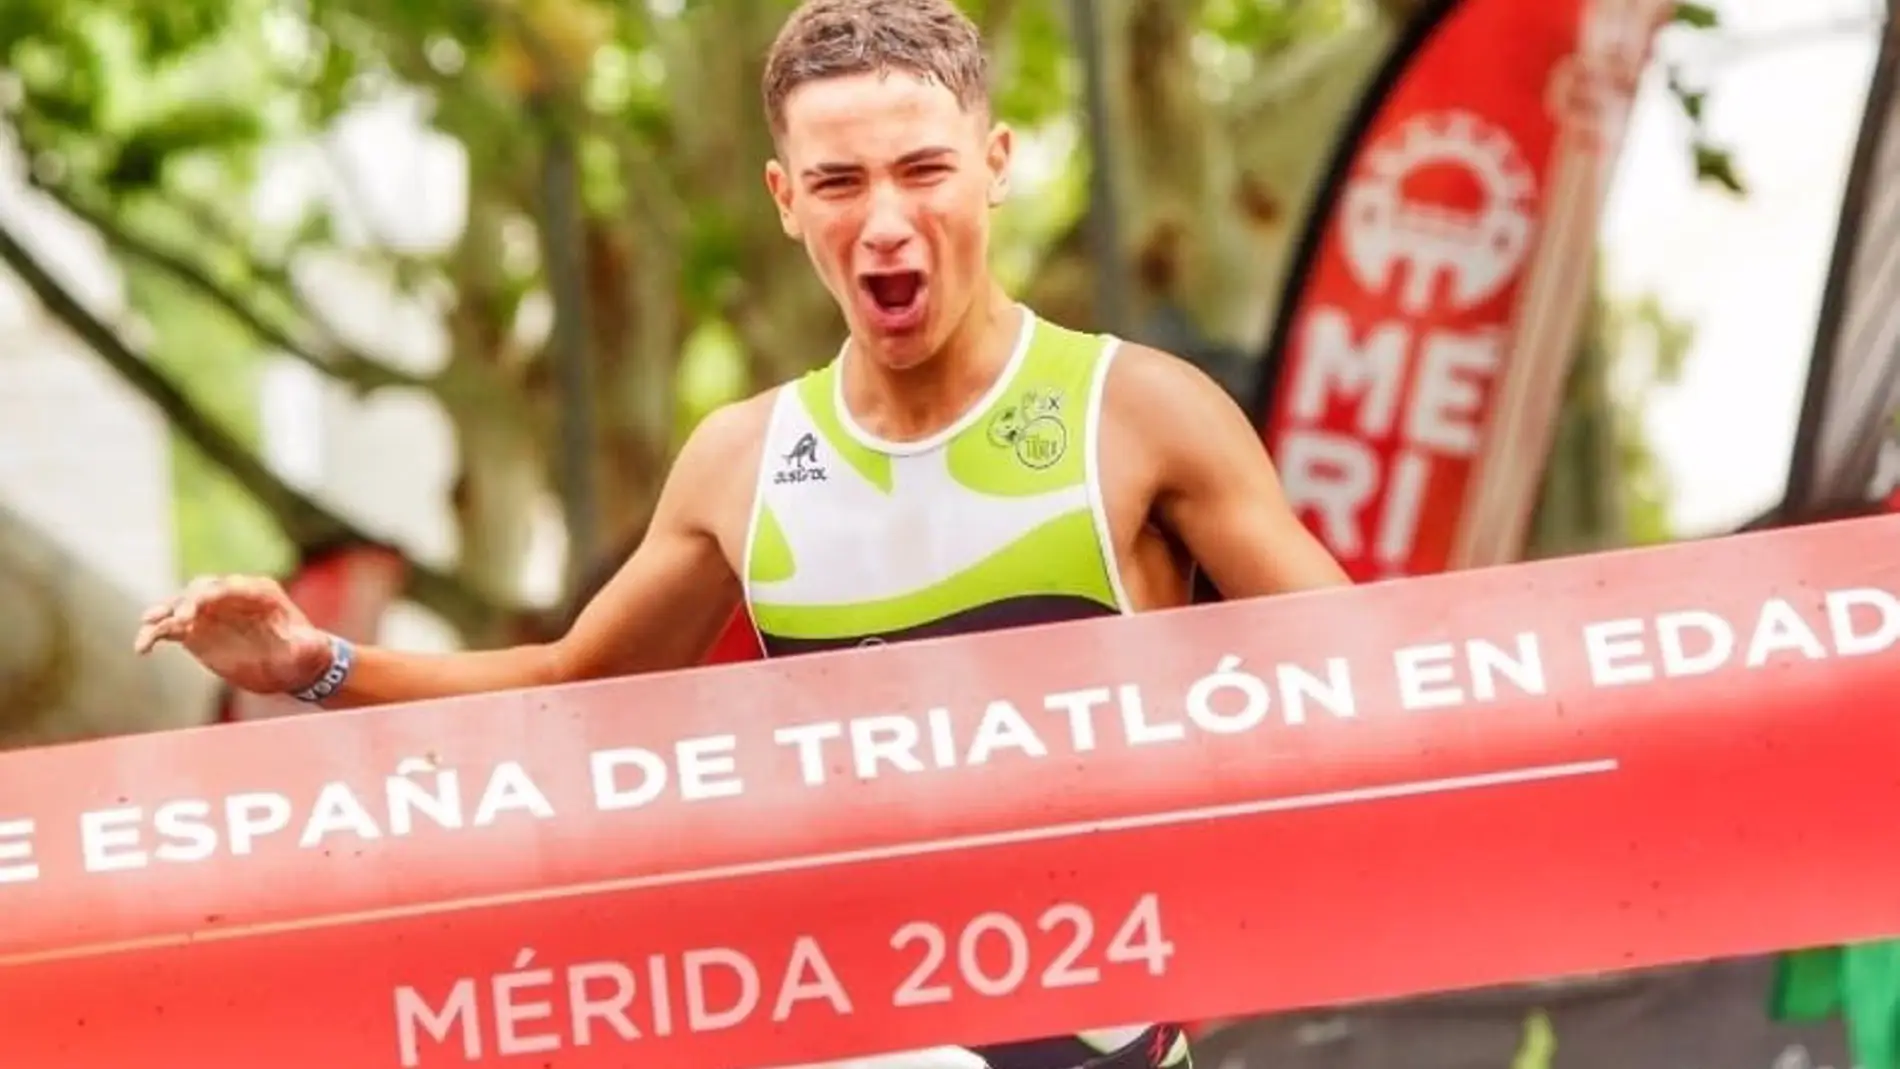 El extremeño Daniel Castro gana en Mérida el Campeonato de España de Triatlón en edad escolar